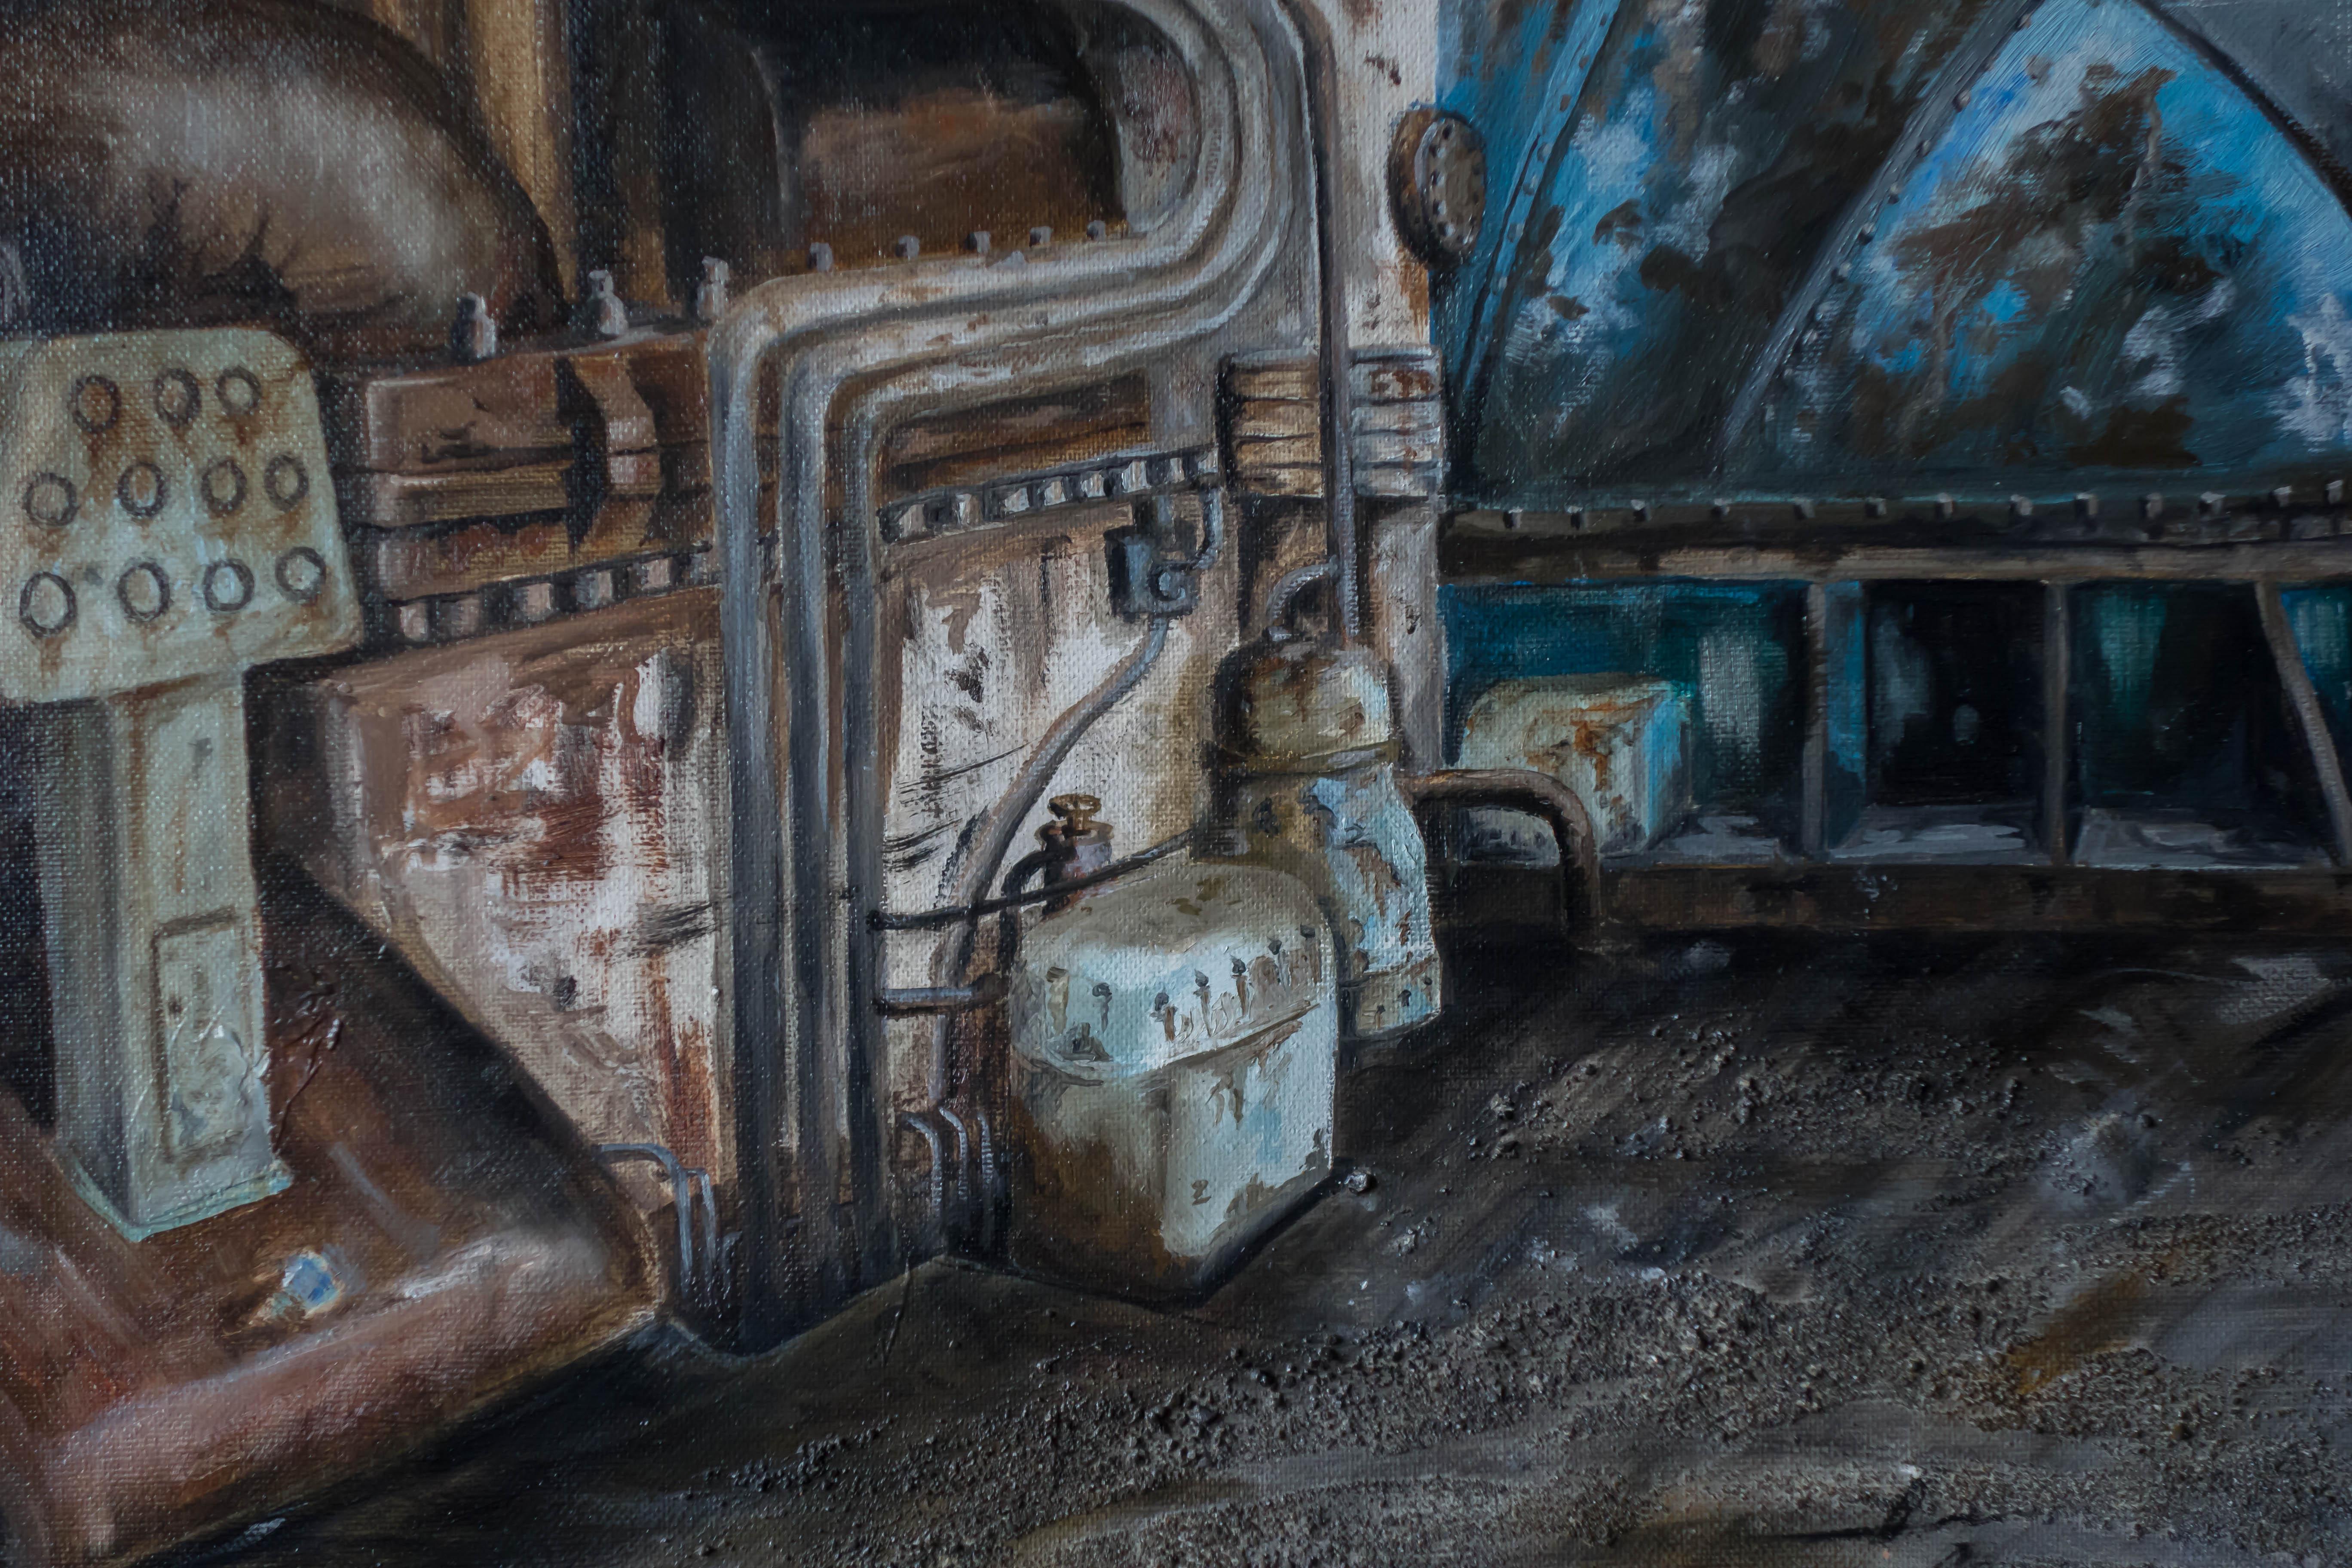 La machine se trouve sous le dais - Painting de Jean-Pierre Brissart